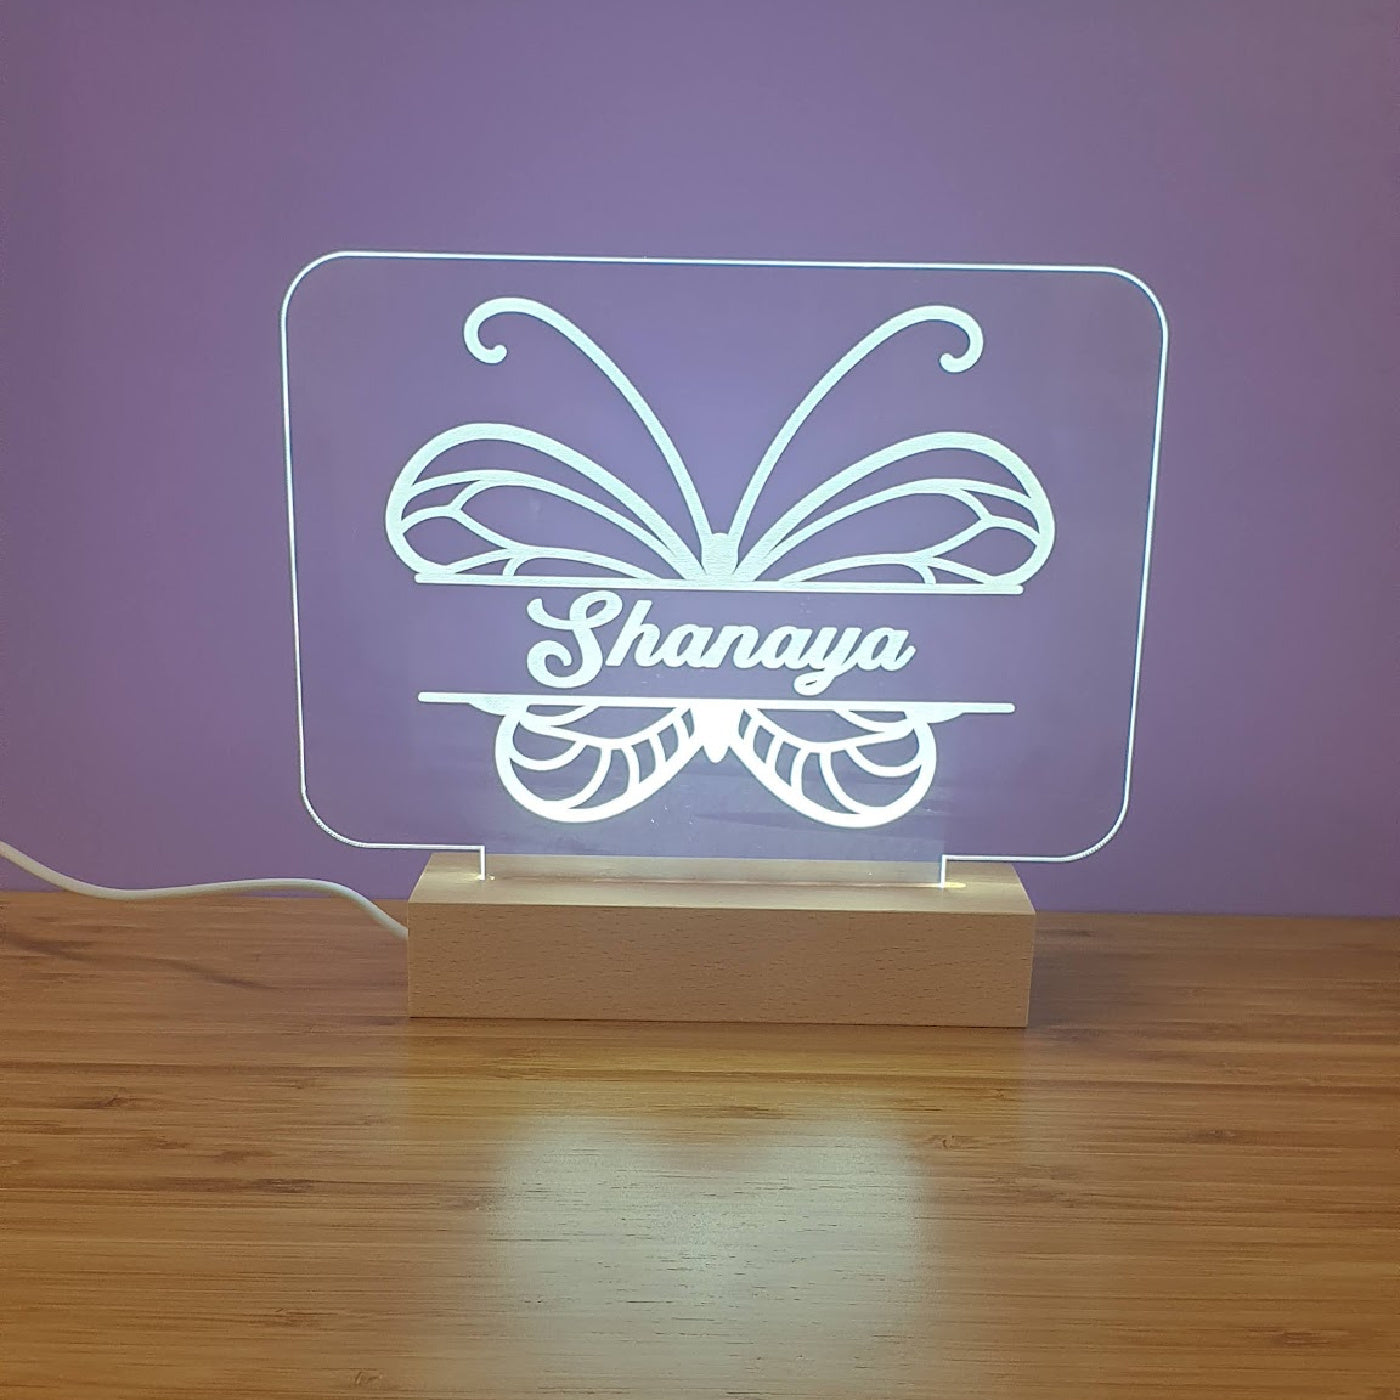 LED Light Up Rectangle Base - Single Name with Artwork